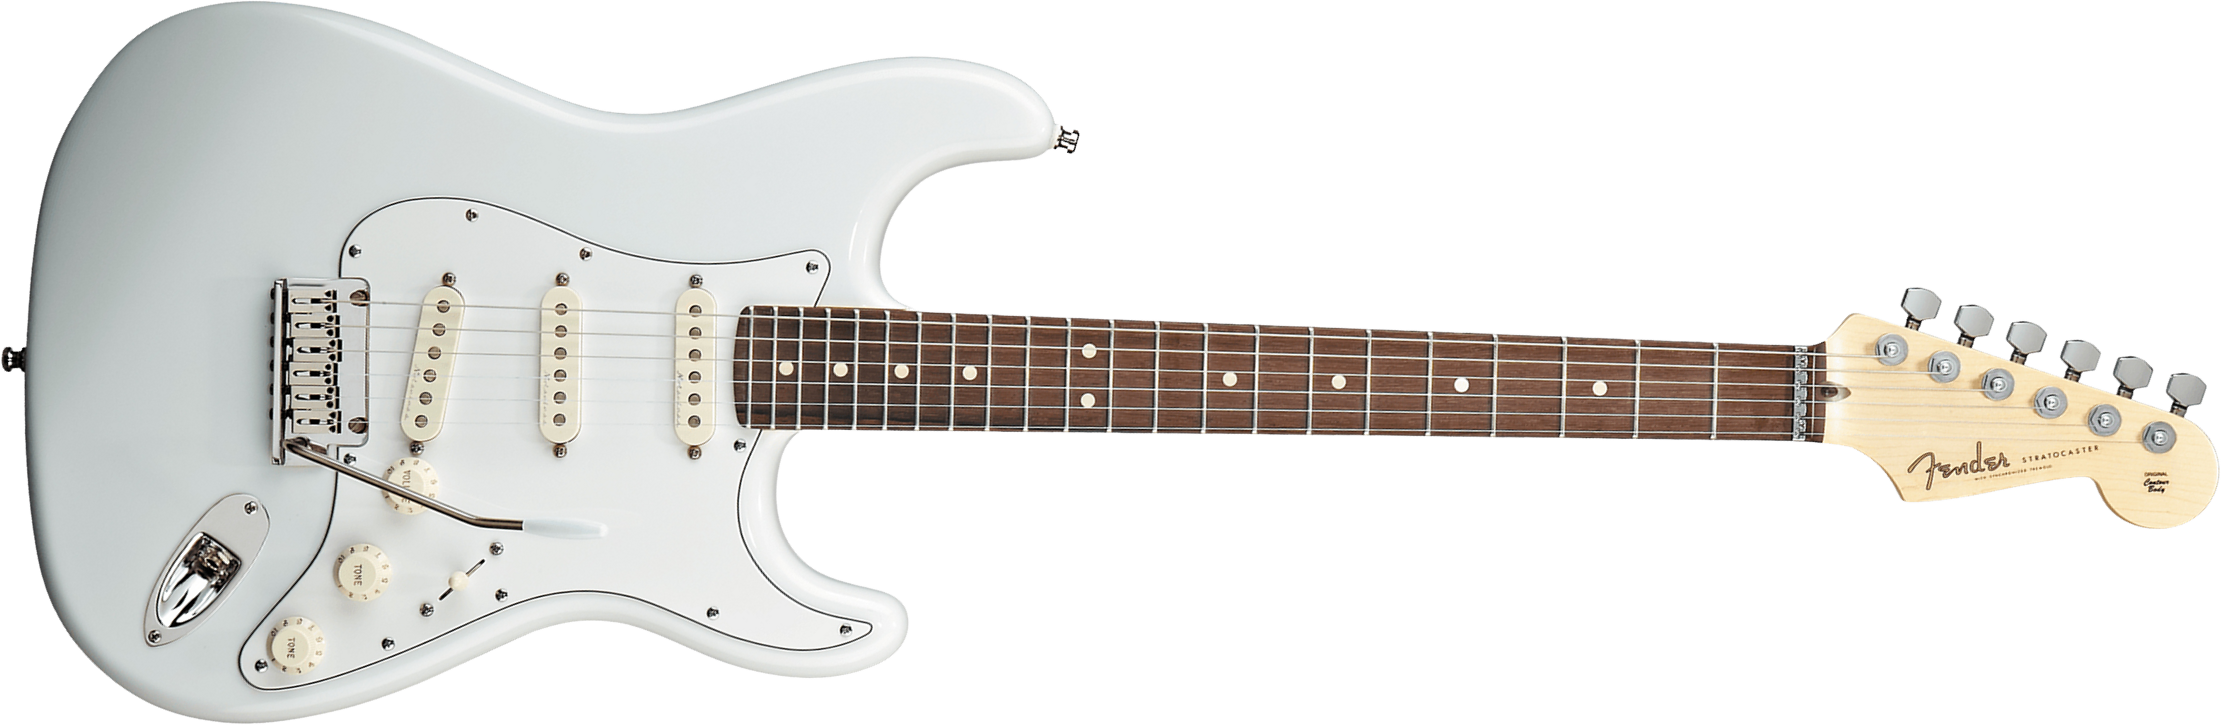 Fender Custom Shop Jeff Beck Strat 3s Trem Rw - Nos Olympic White - Guitare Électrique Forme Str - Main picture